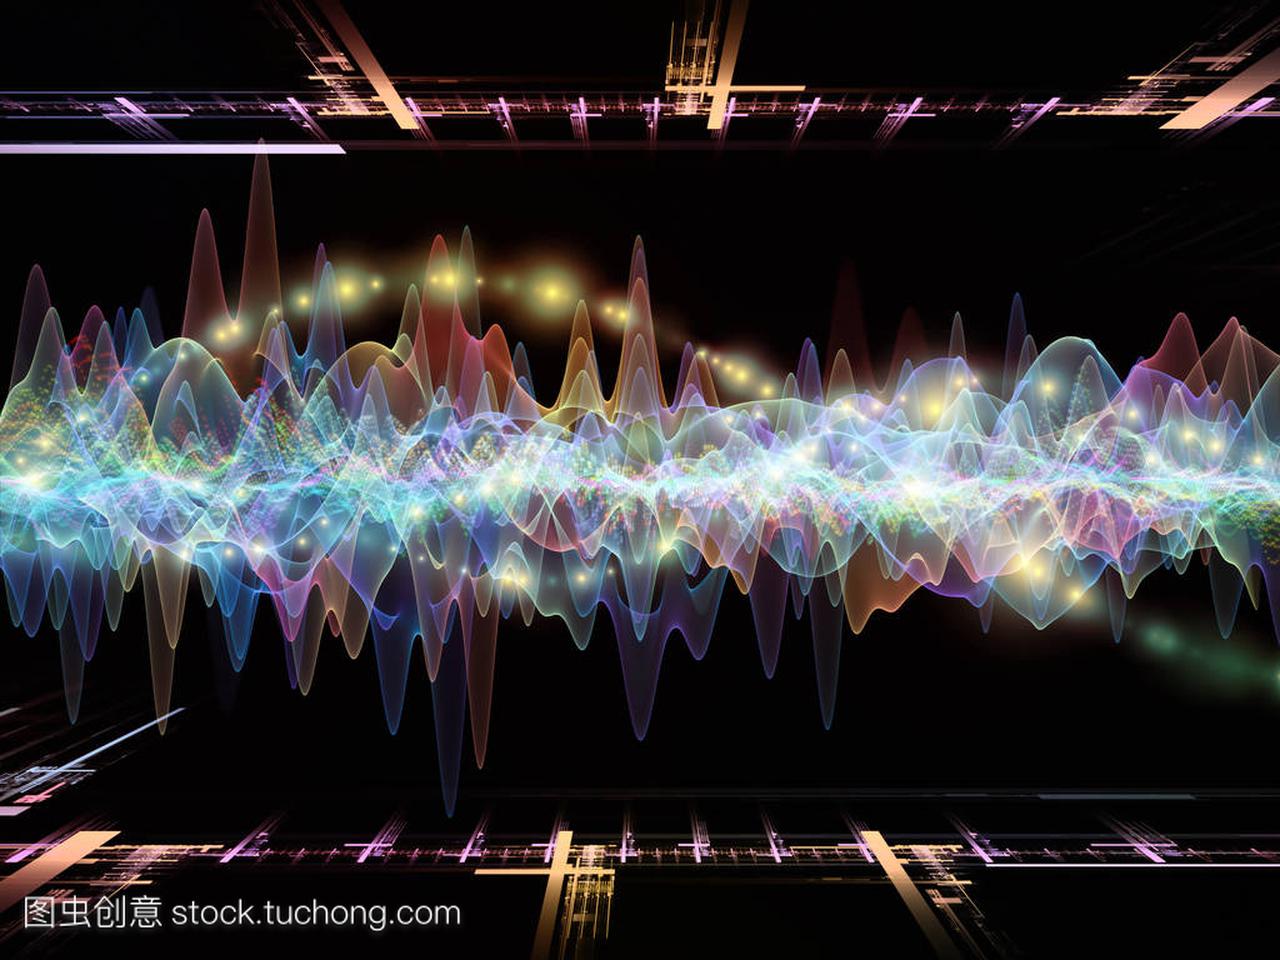 波函数系列。背景由彩色正弦振动、光和分形元